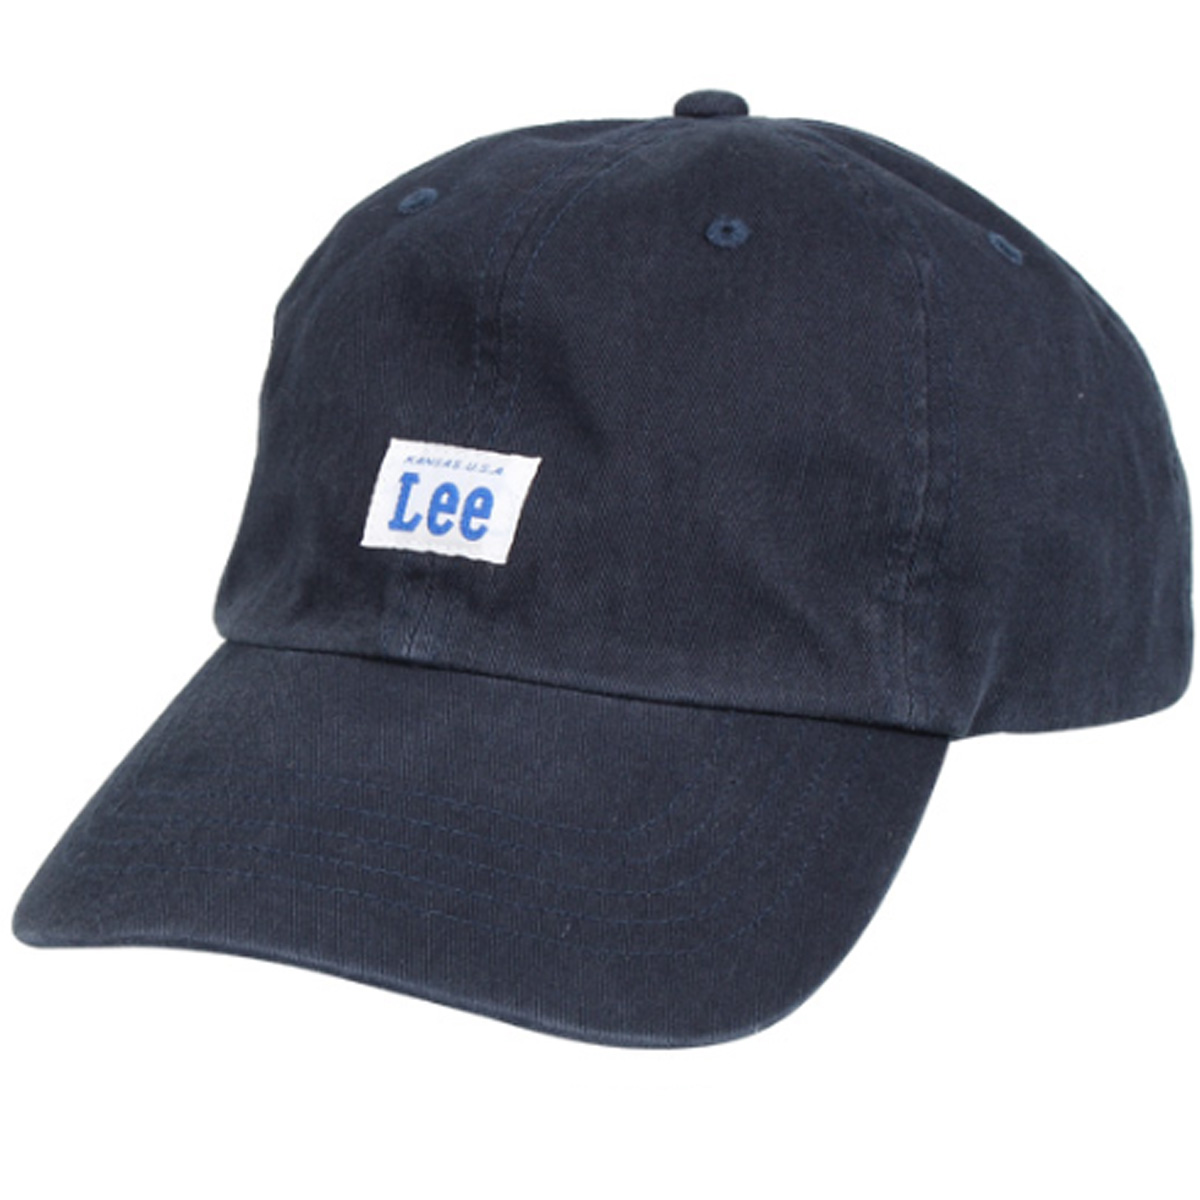 Lee リー キャップ 帽子 ローキャップ メンズ レディース GS TWILL LOW CAP 1...